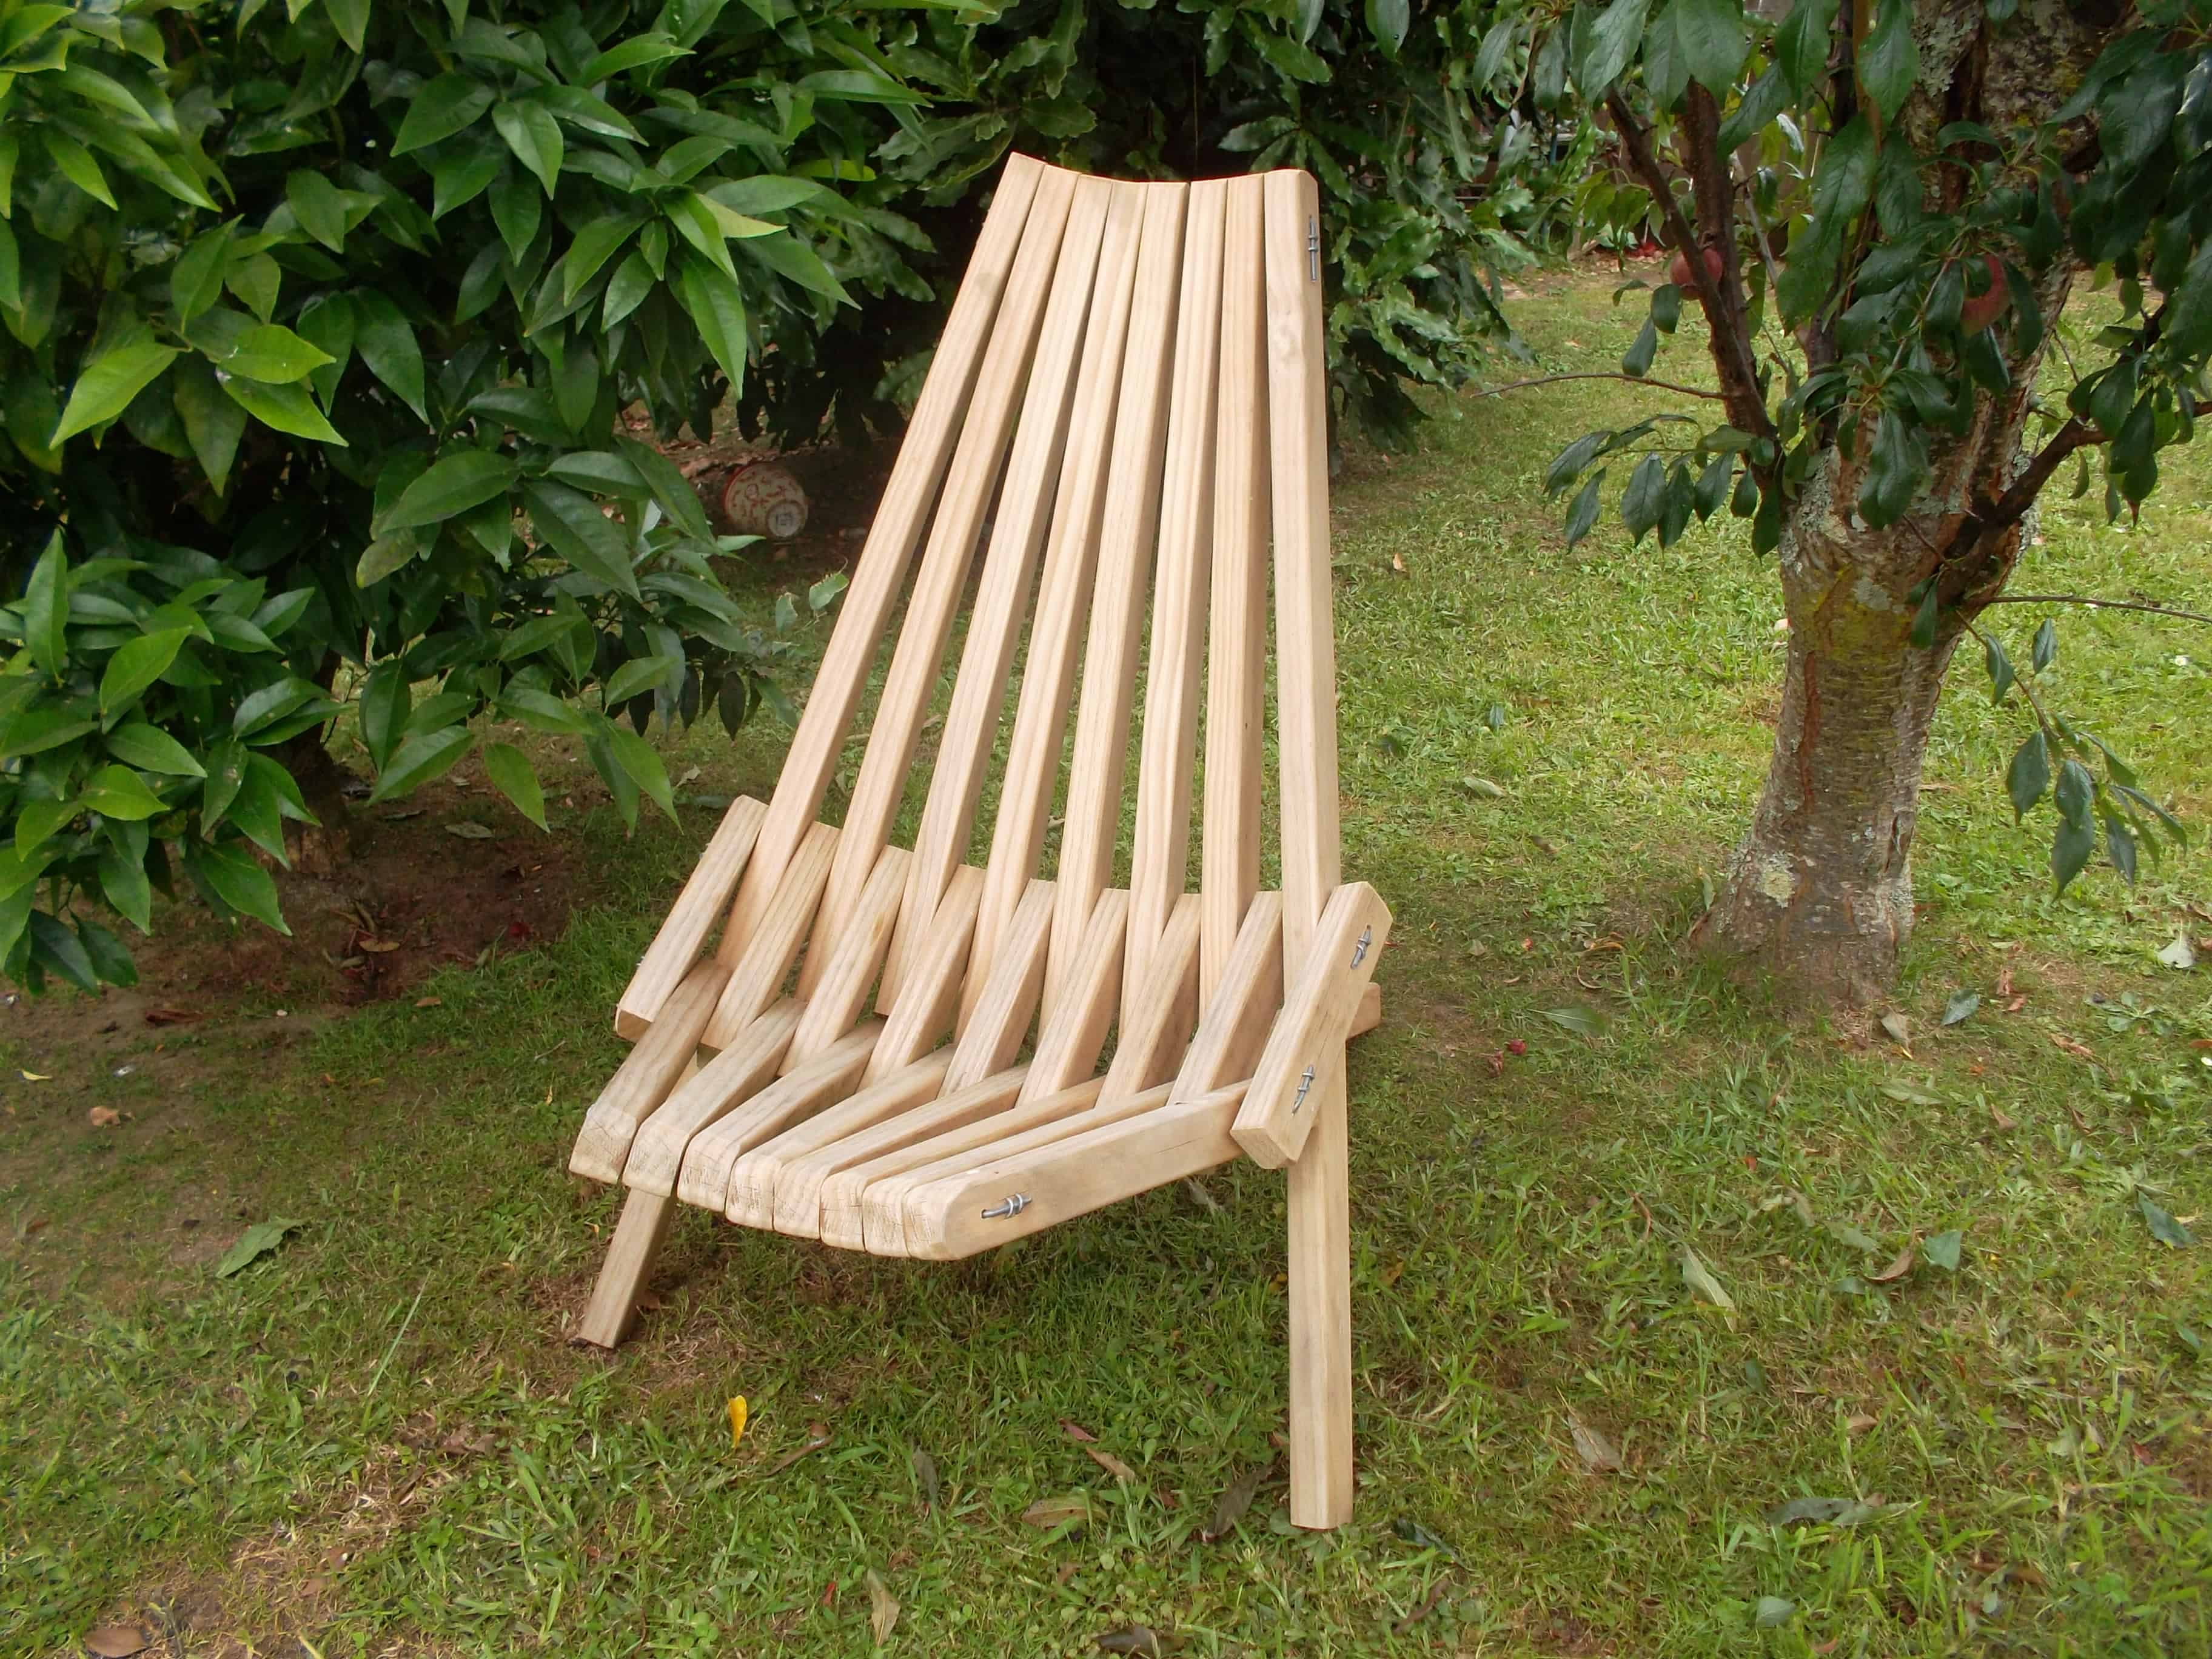 Kentucky Stick Chair BuildEazy